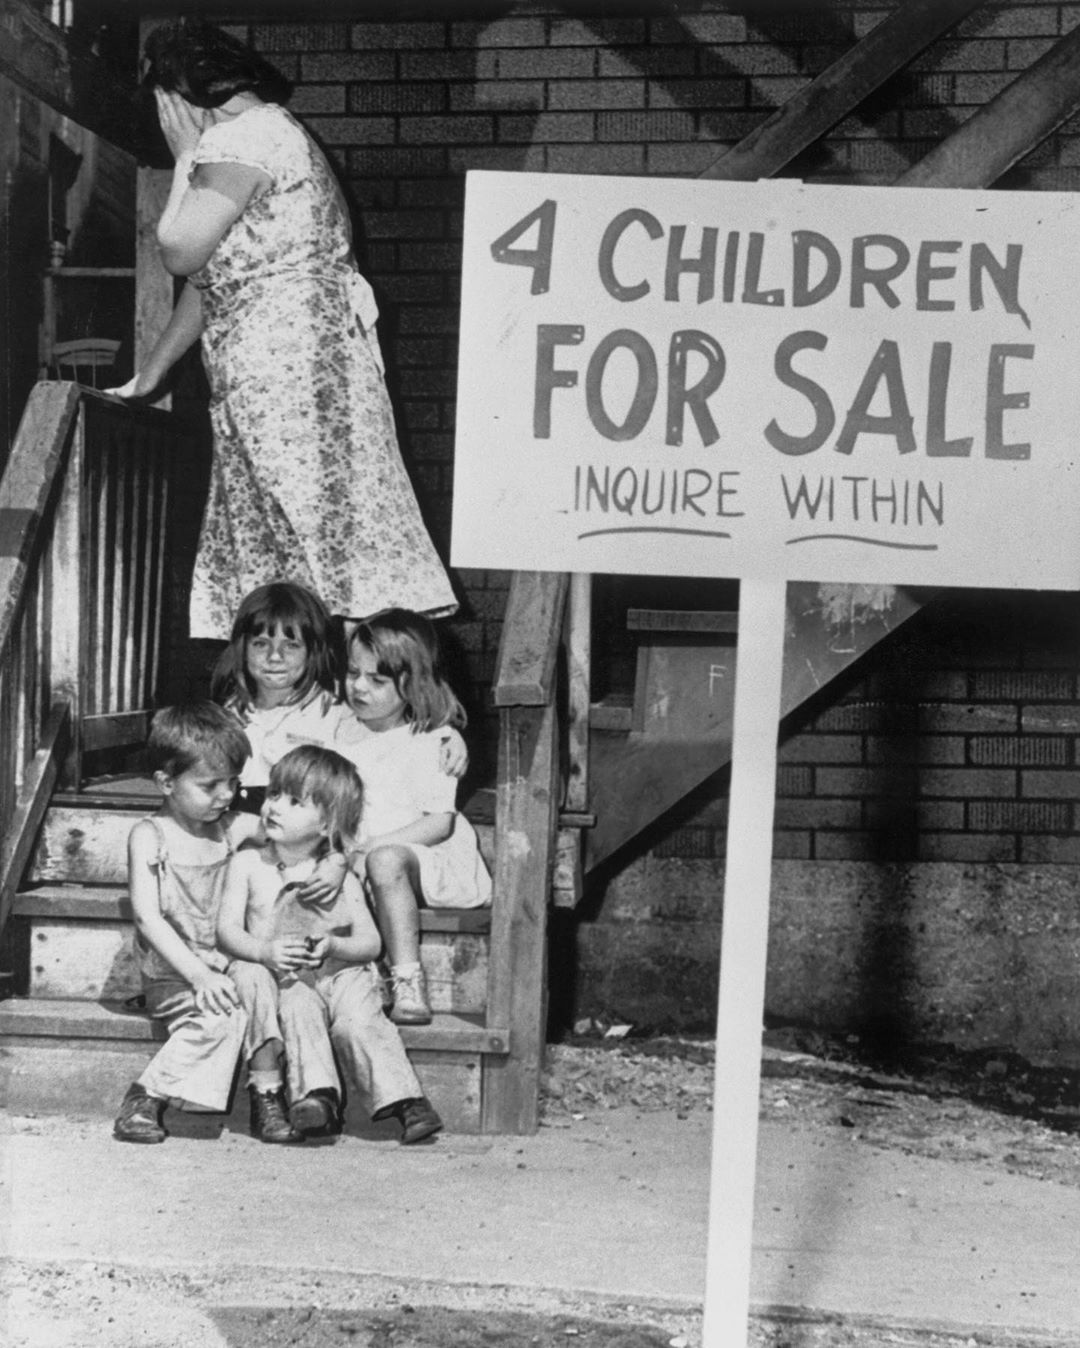 Четыре ребенка на продажу. Спросить внутри